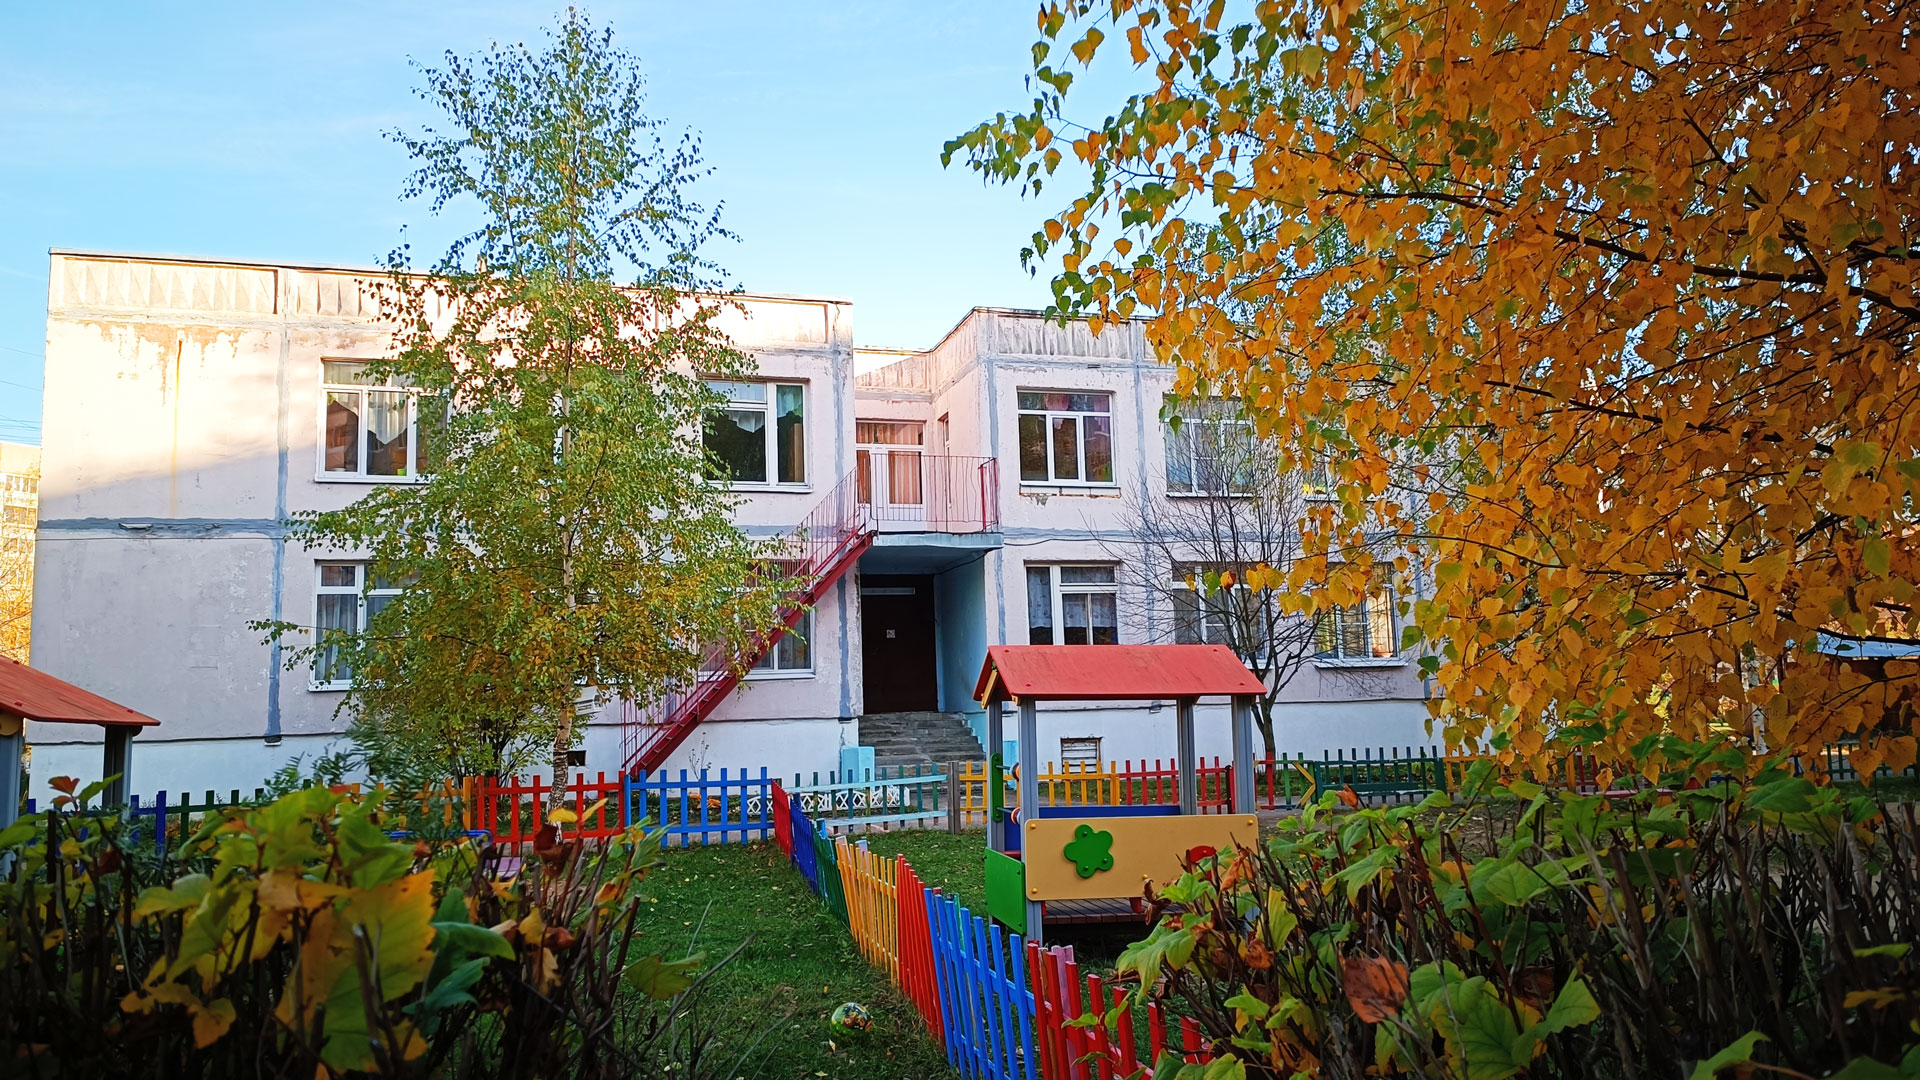 Детский сад 114 Ярославль: обзорный вид здания и территории д/с.